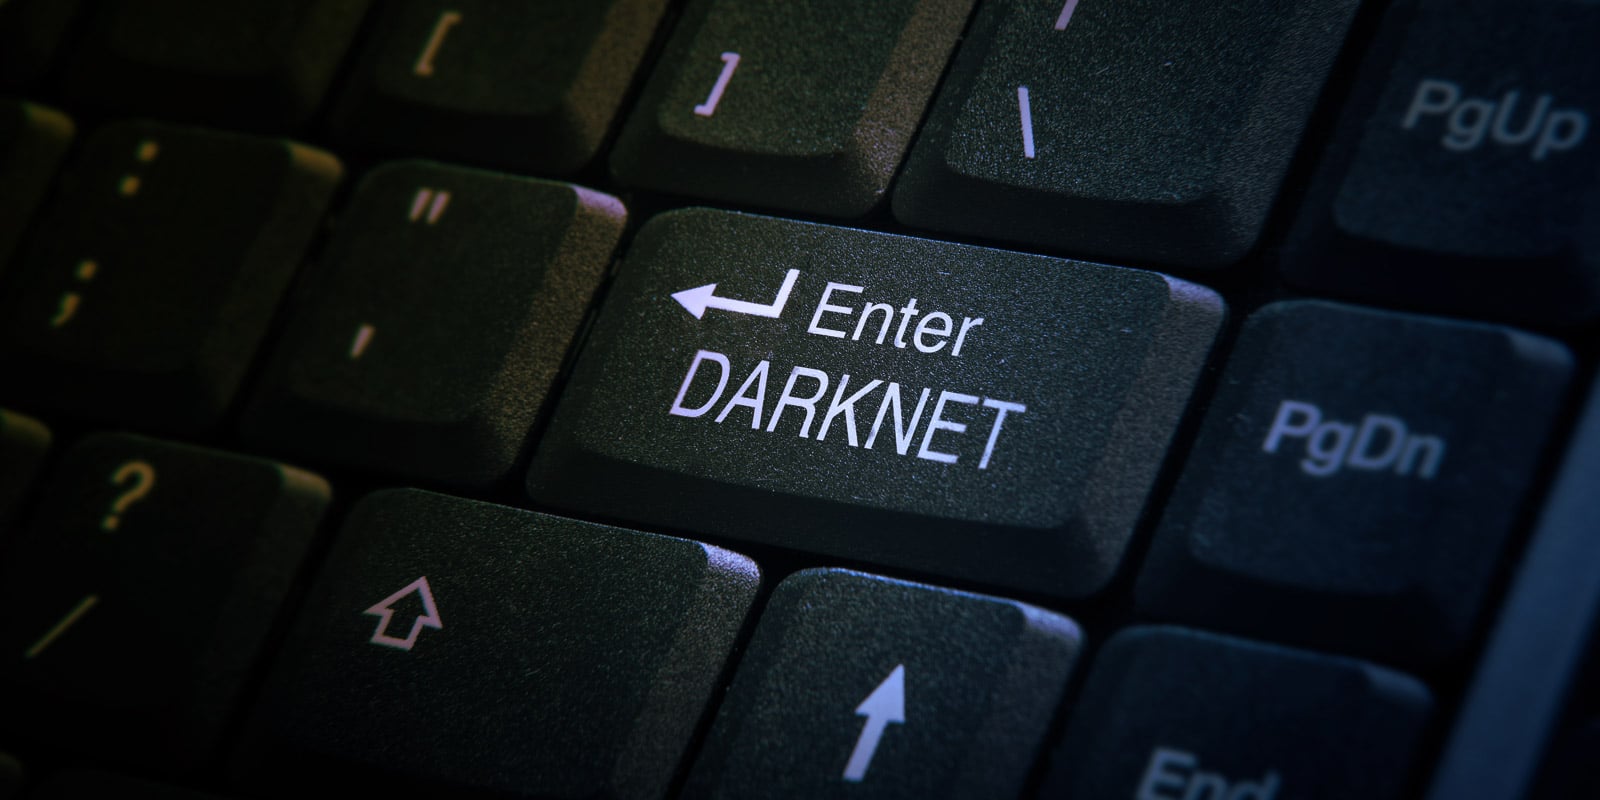 Cypher Darknet Market